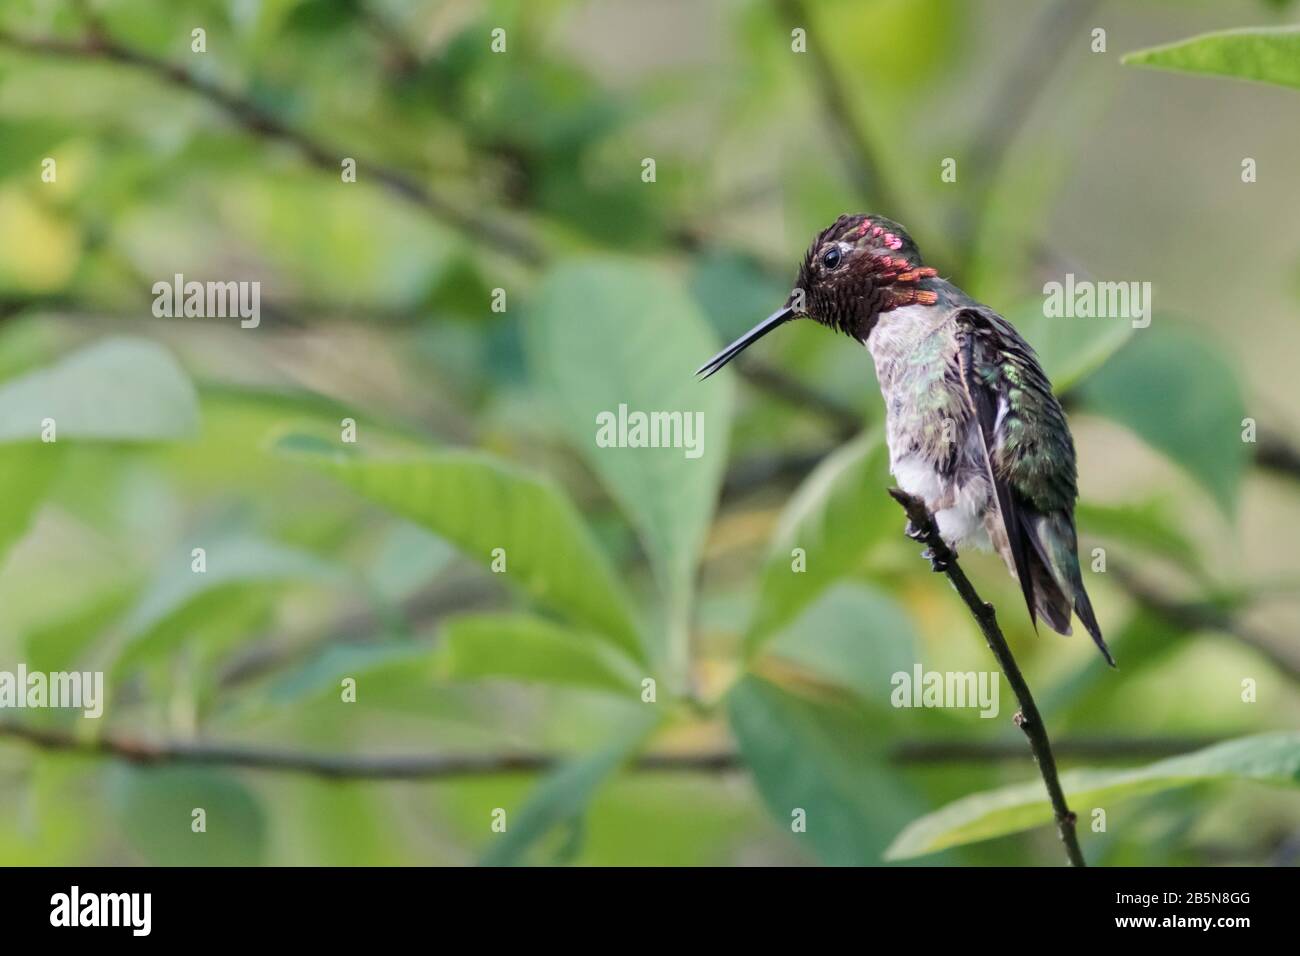 Ein wartender, wild aussehender Kolibris der männlichen Anna mit leuchtend roter Krone und Schluchten, grünem Rücken und leicht geöffnetem Schnabel, starrt von einem winzigen Ast herab. Stockfoto